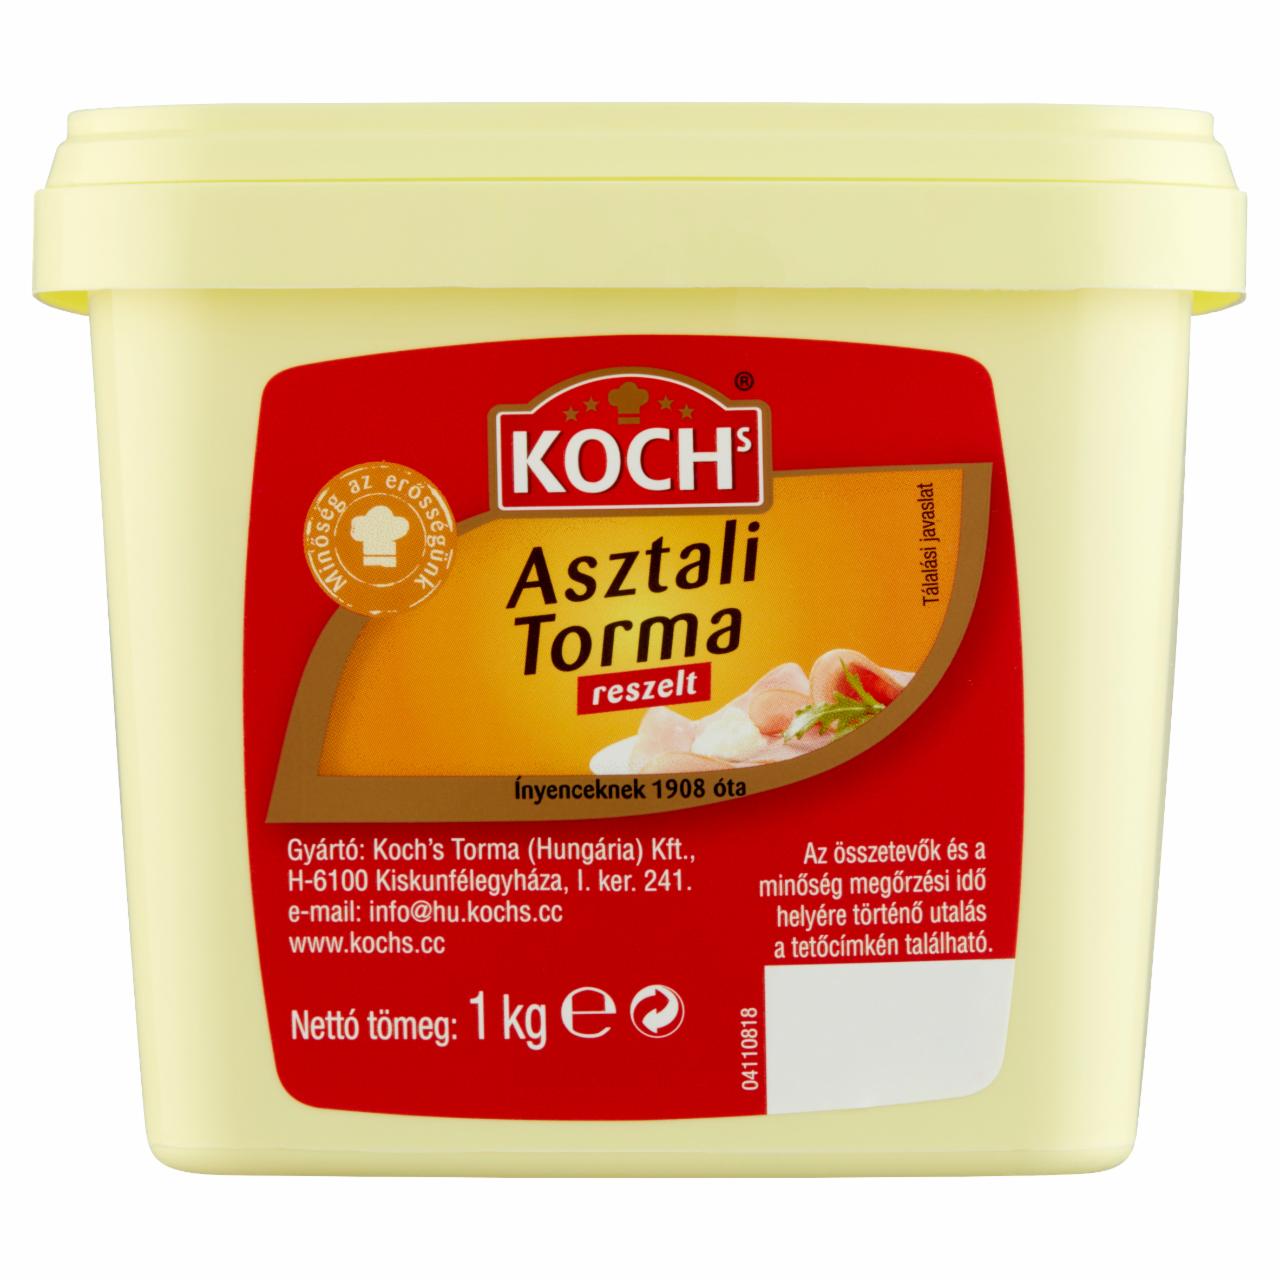 Képek - Koch's reszelt asztali torma 1 kg